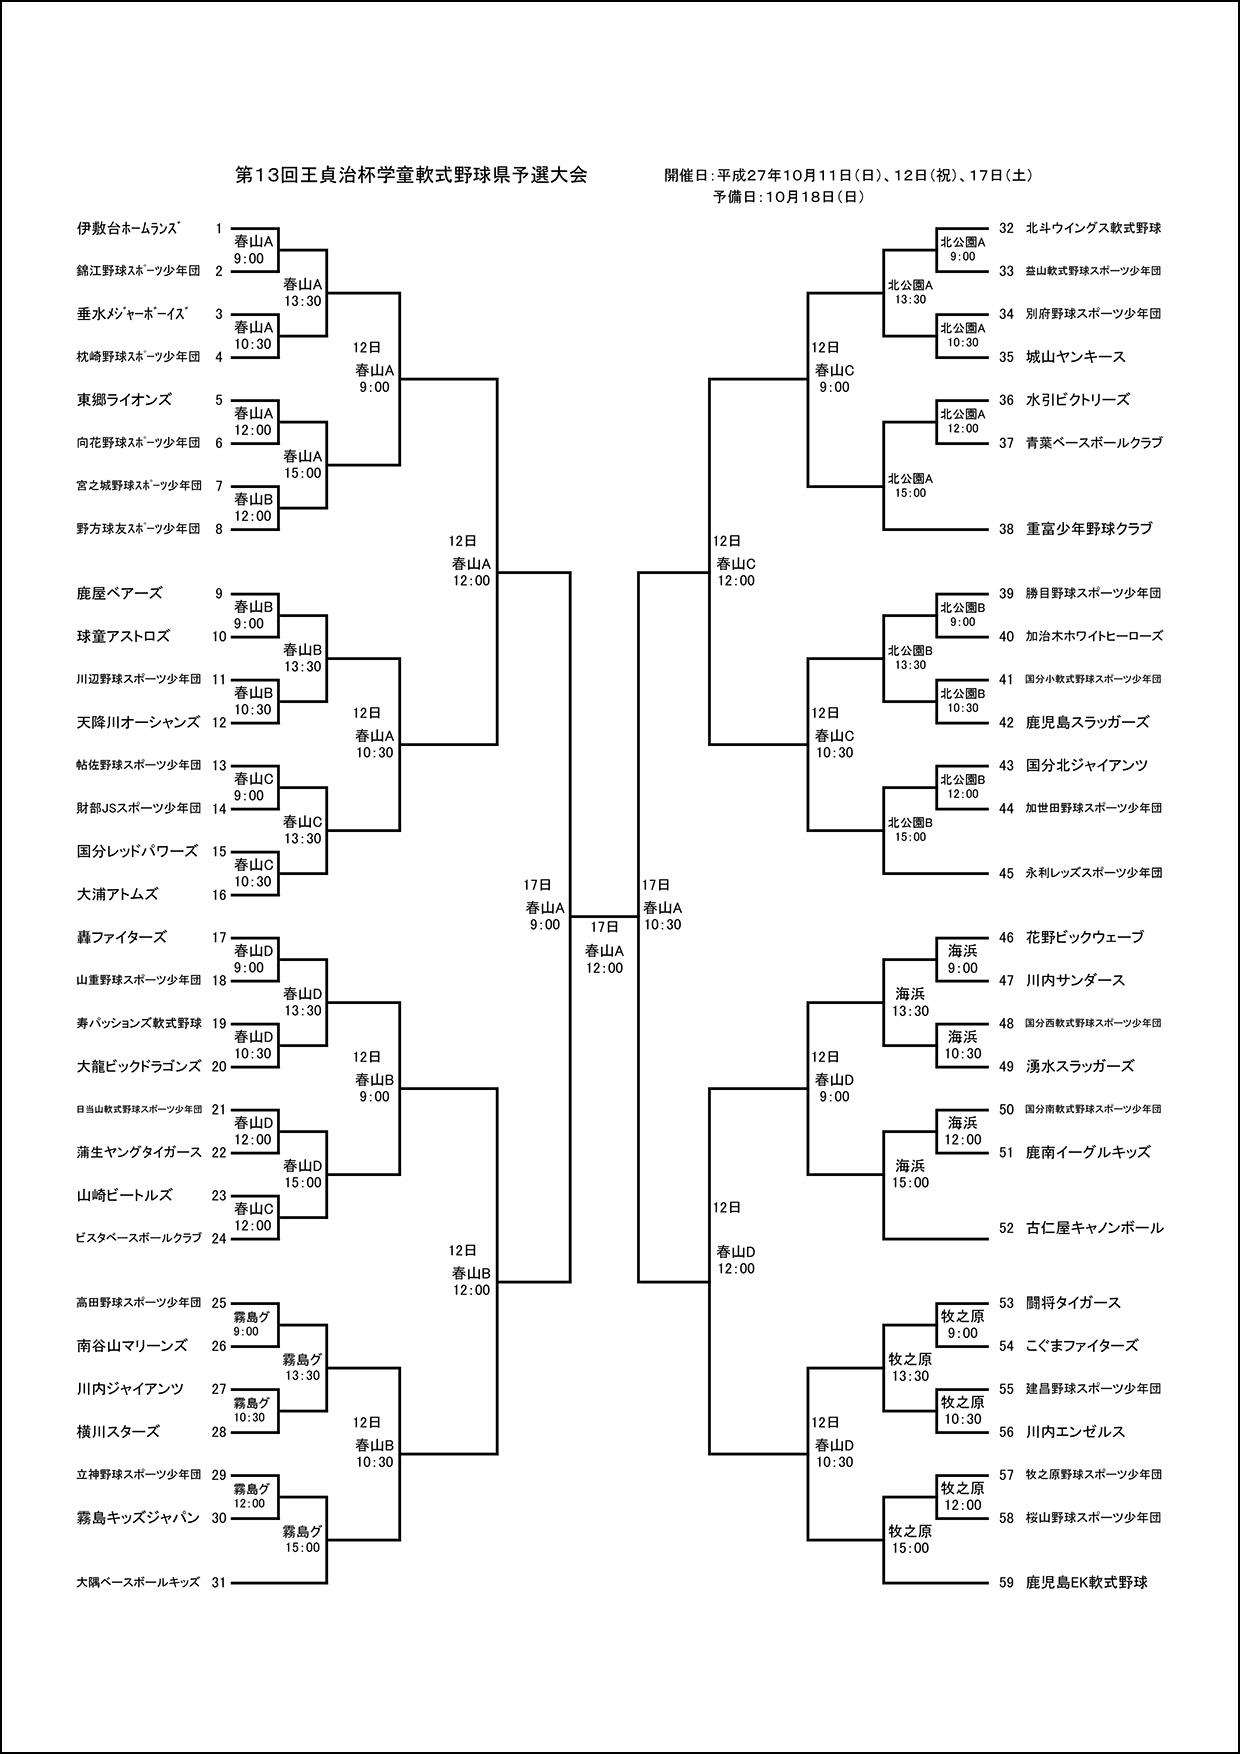 トーナメント表（H27）